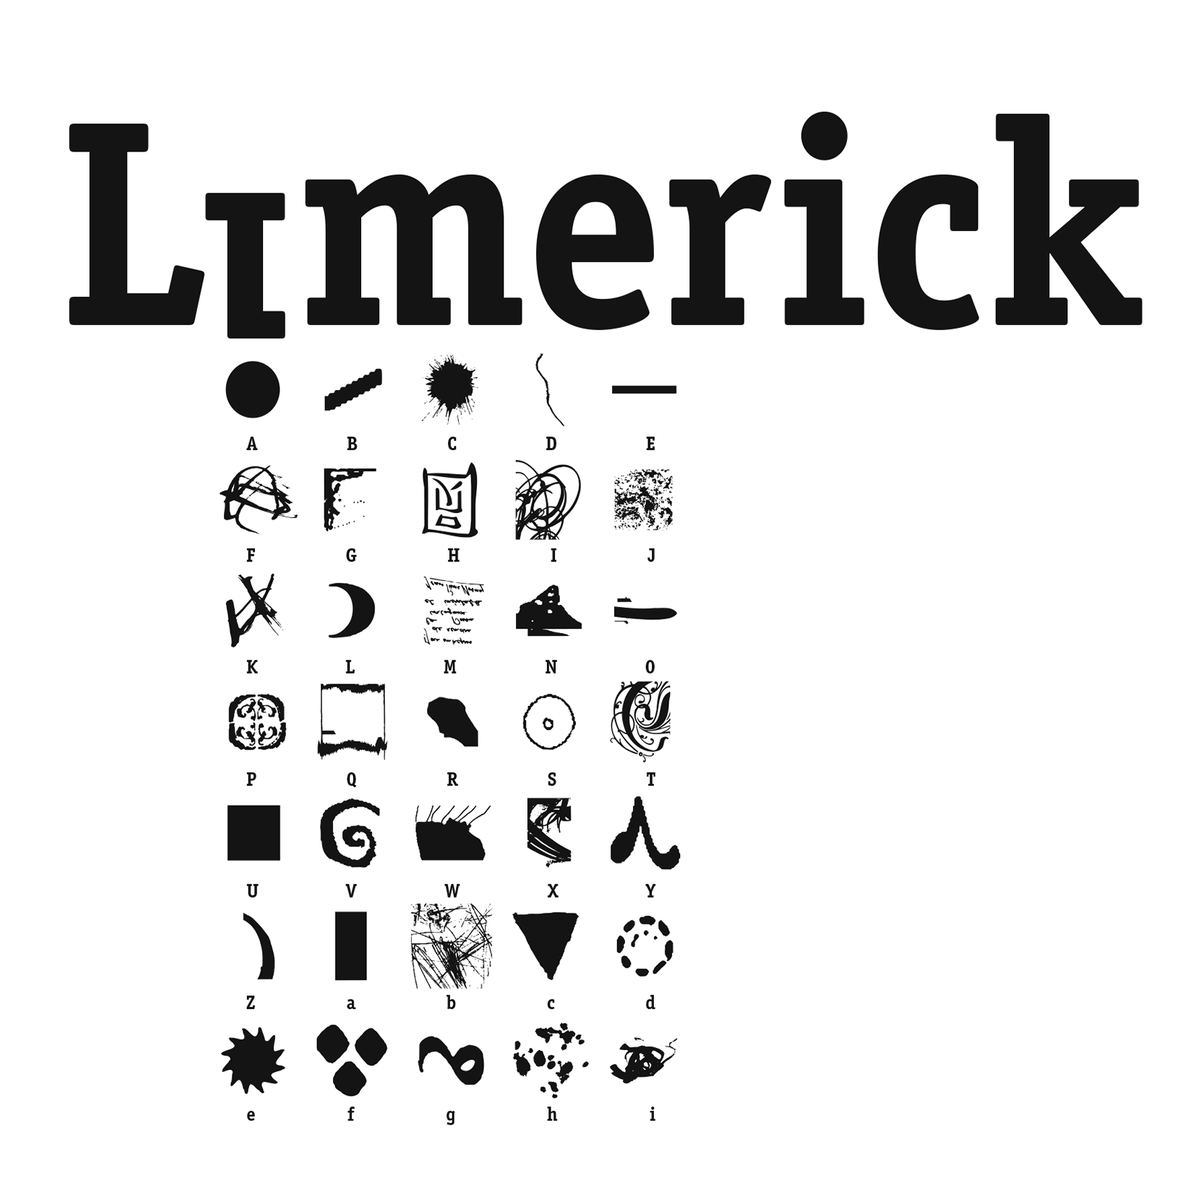 Limerick description & booklet cover